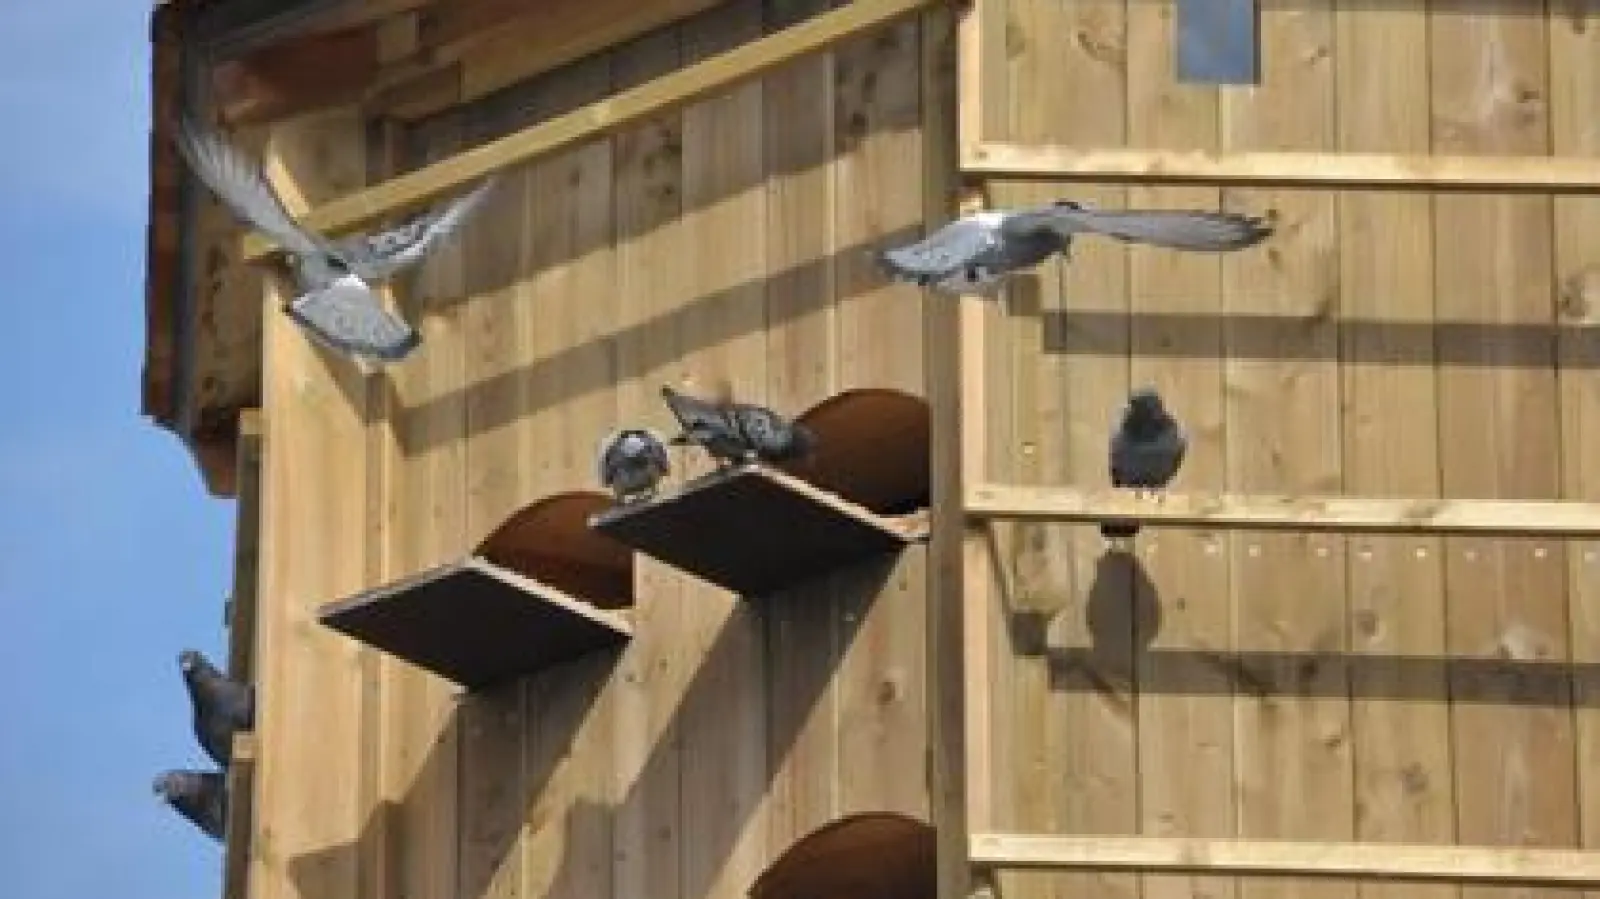 Nehmen ihr neues Zuhause offensichtlich an:   Die Tauben in dem eigens für sie errichteten Turm in der Grünanlage am Schwabencenter.			Fotos: Patrick Bruckner (Fotos: Patrick Bruckner)